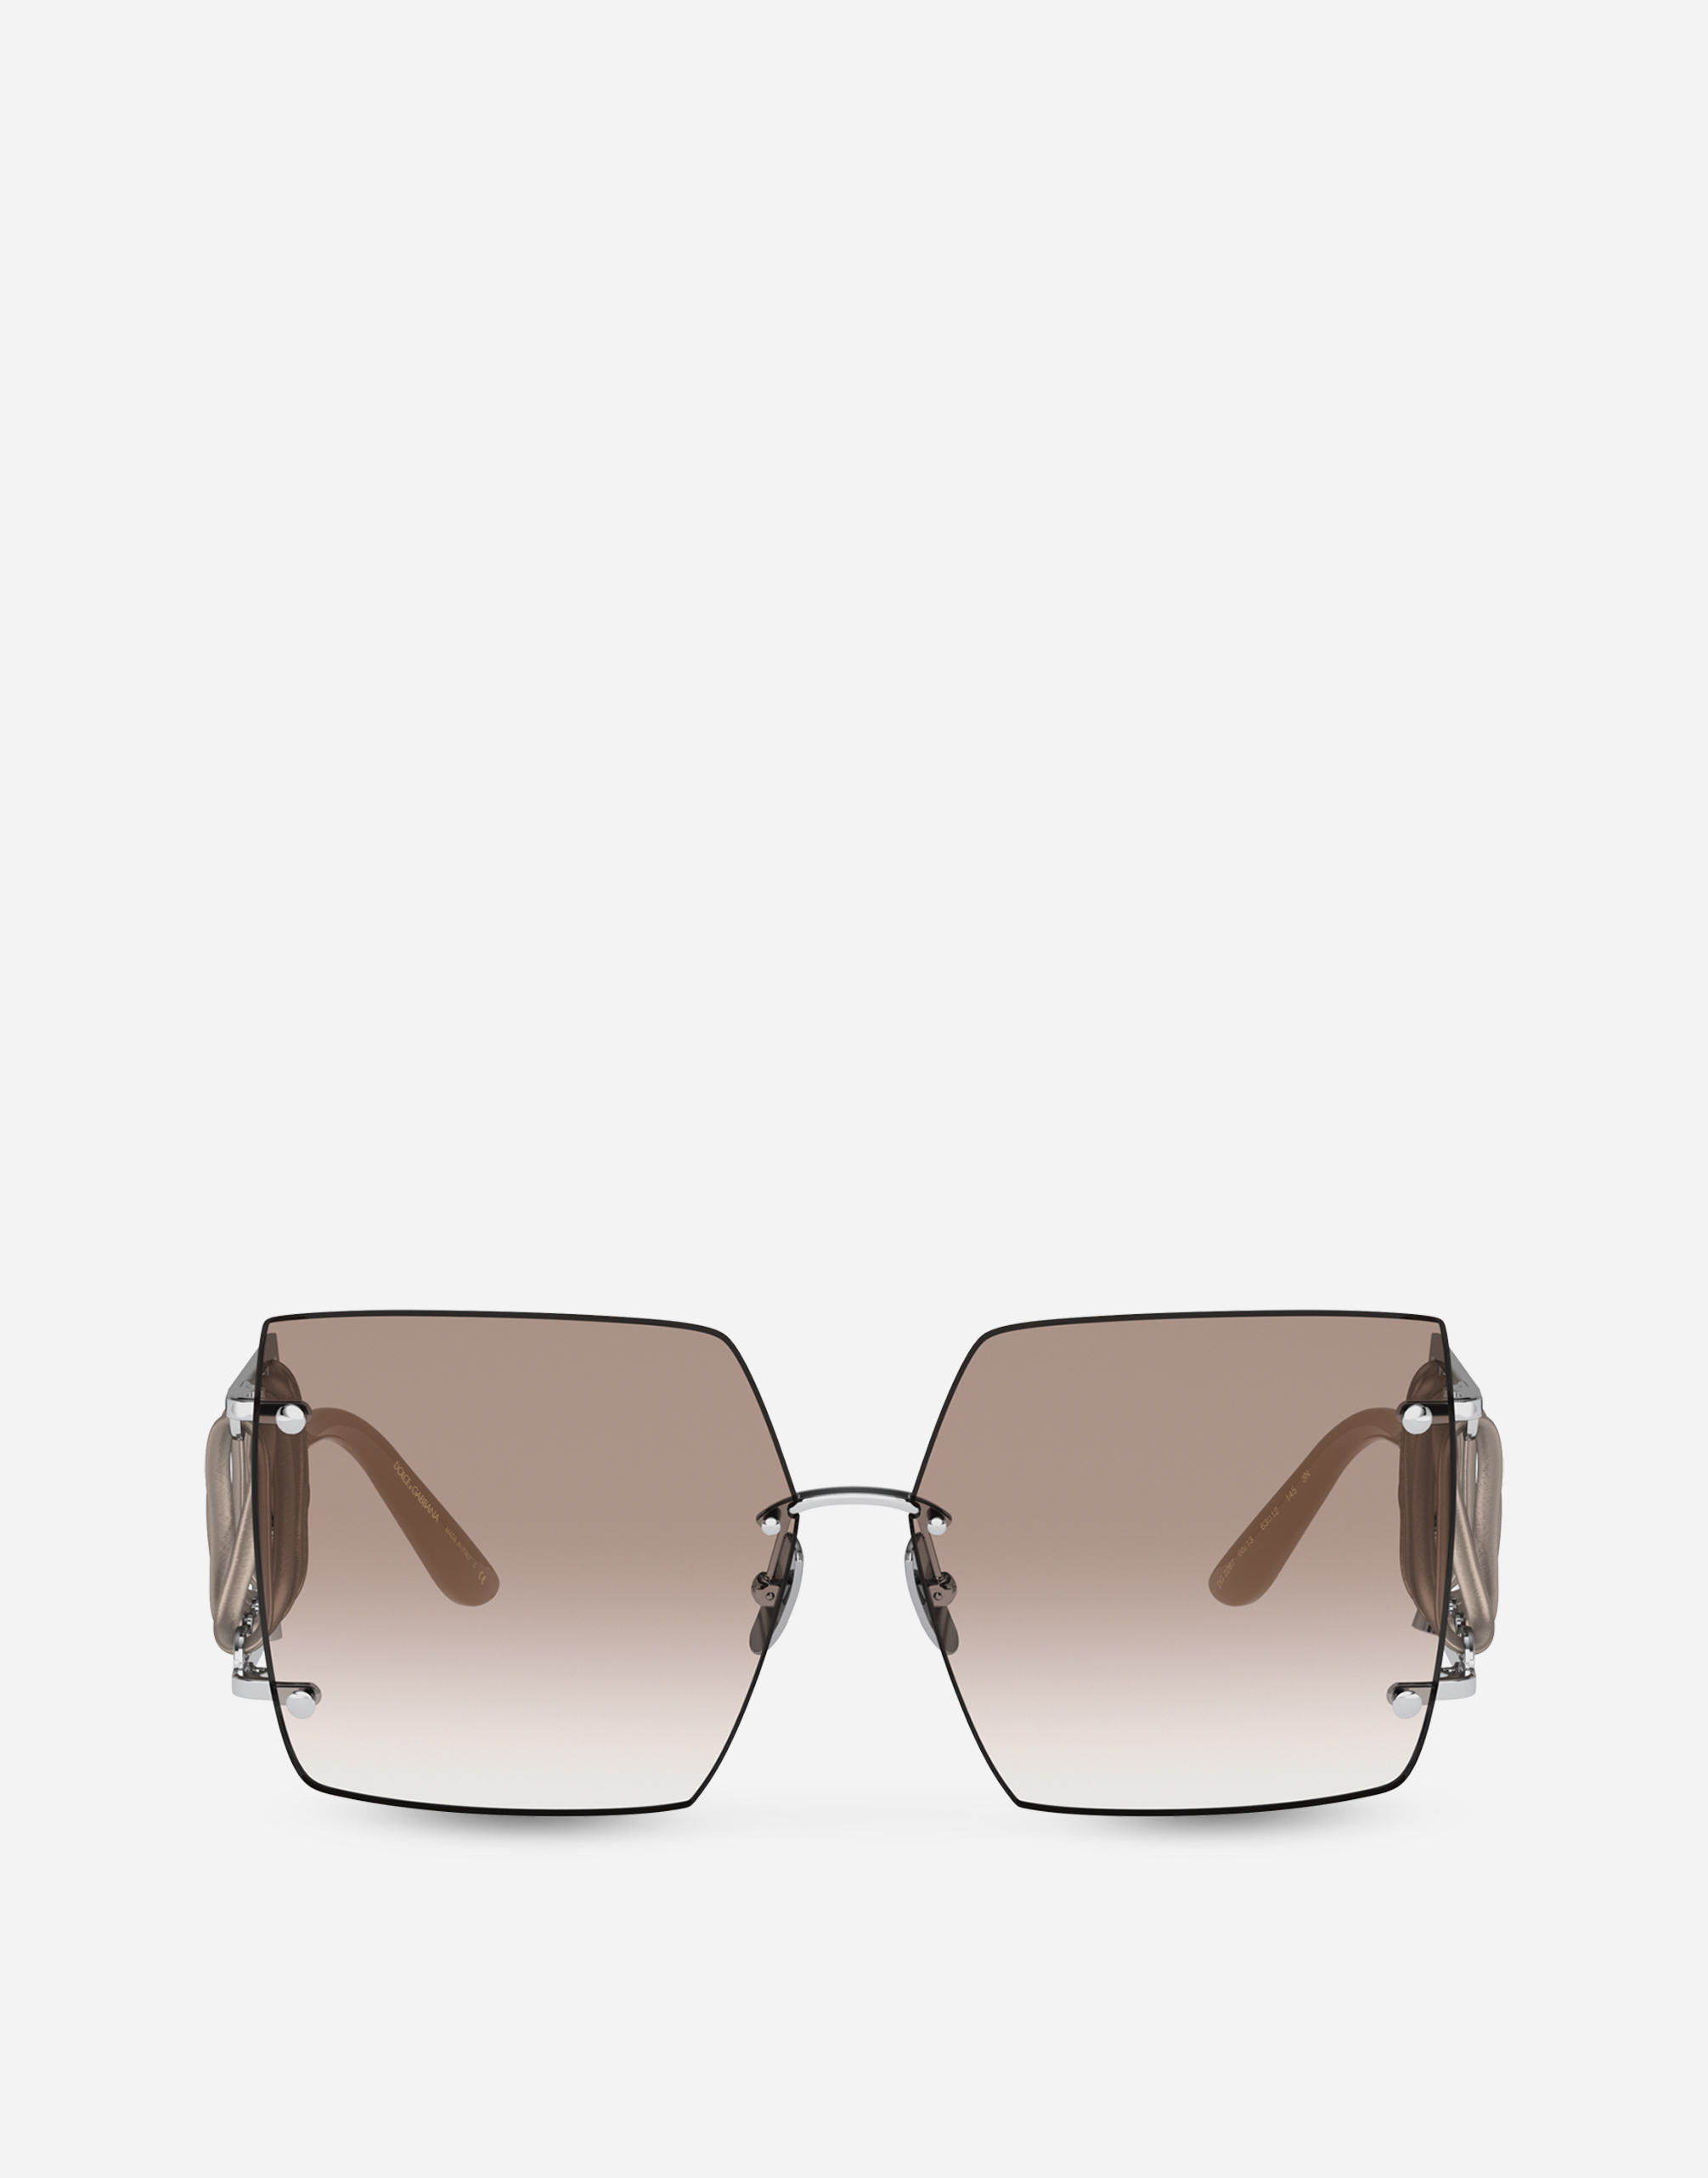 Foundation sunglasses in Silver